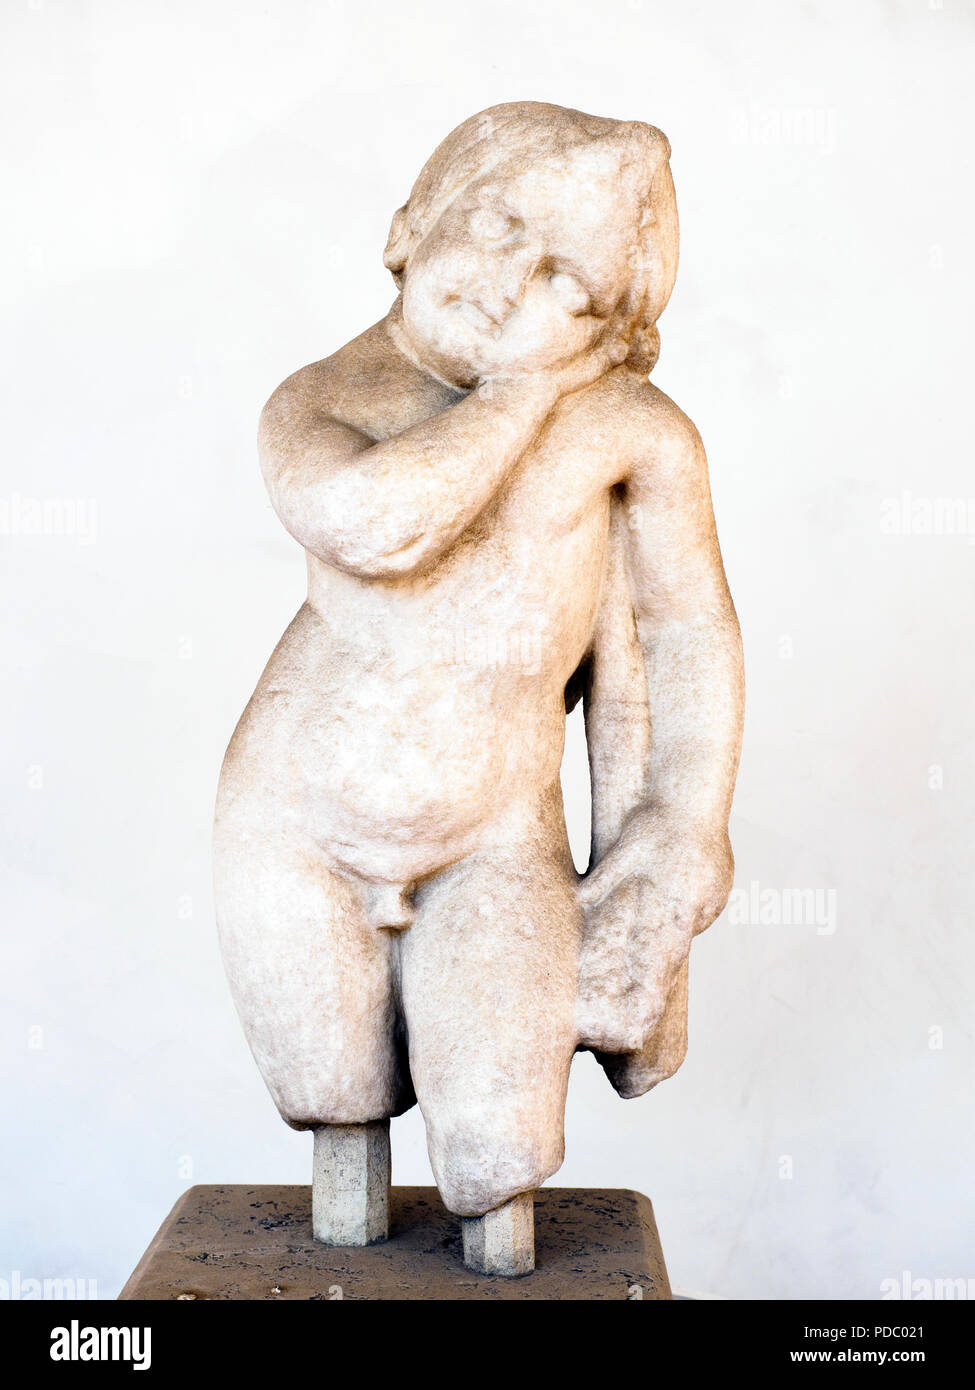 Statuette der grabkunst Amor, stützte sich auf eine auf den Kopf, Taschenlampe, weißem Marmor, 1.-2. Jh. nach Chr. - Nationalen Römischen Museum - die Bäder von Diocletian - Rom, Italien Stockfoto